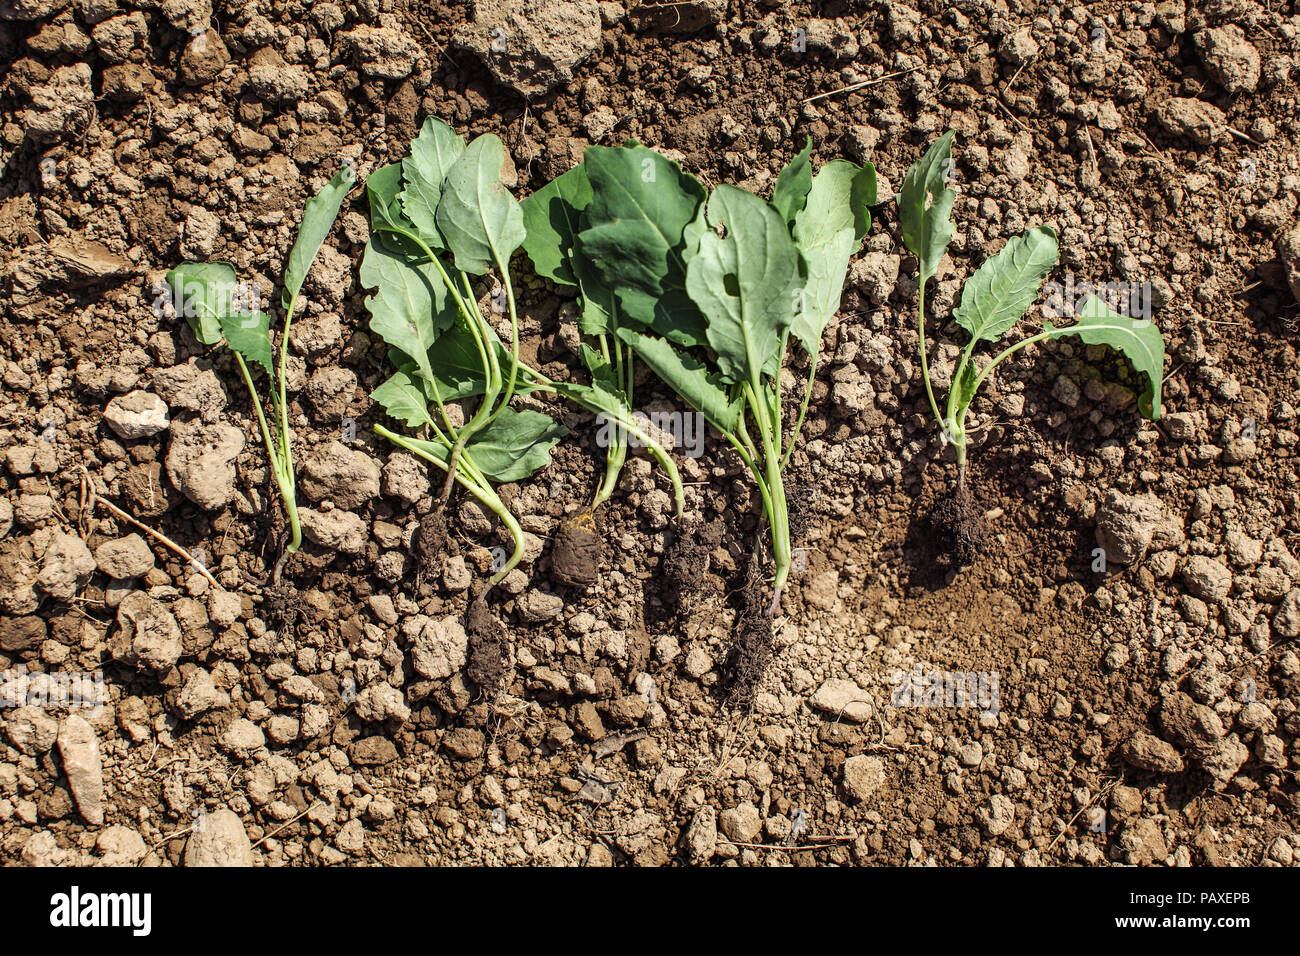 Les jeunes plantes de chourave nurseling - prêt à être planté dans le sol. Jardinage du printemps. Banque D'Images